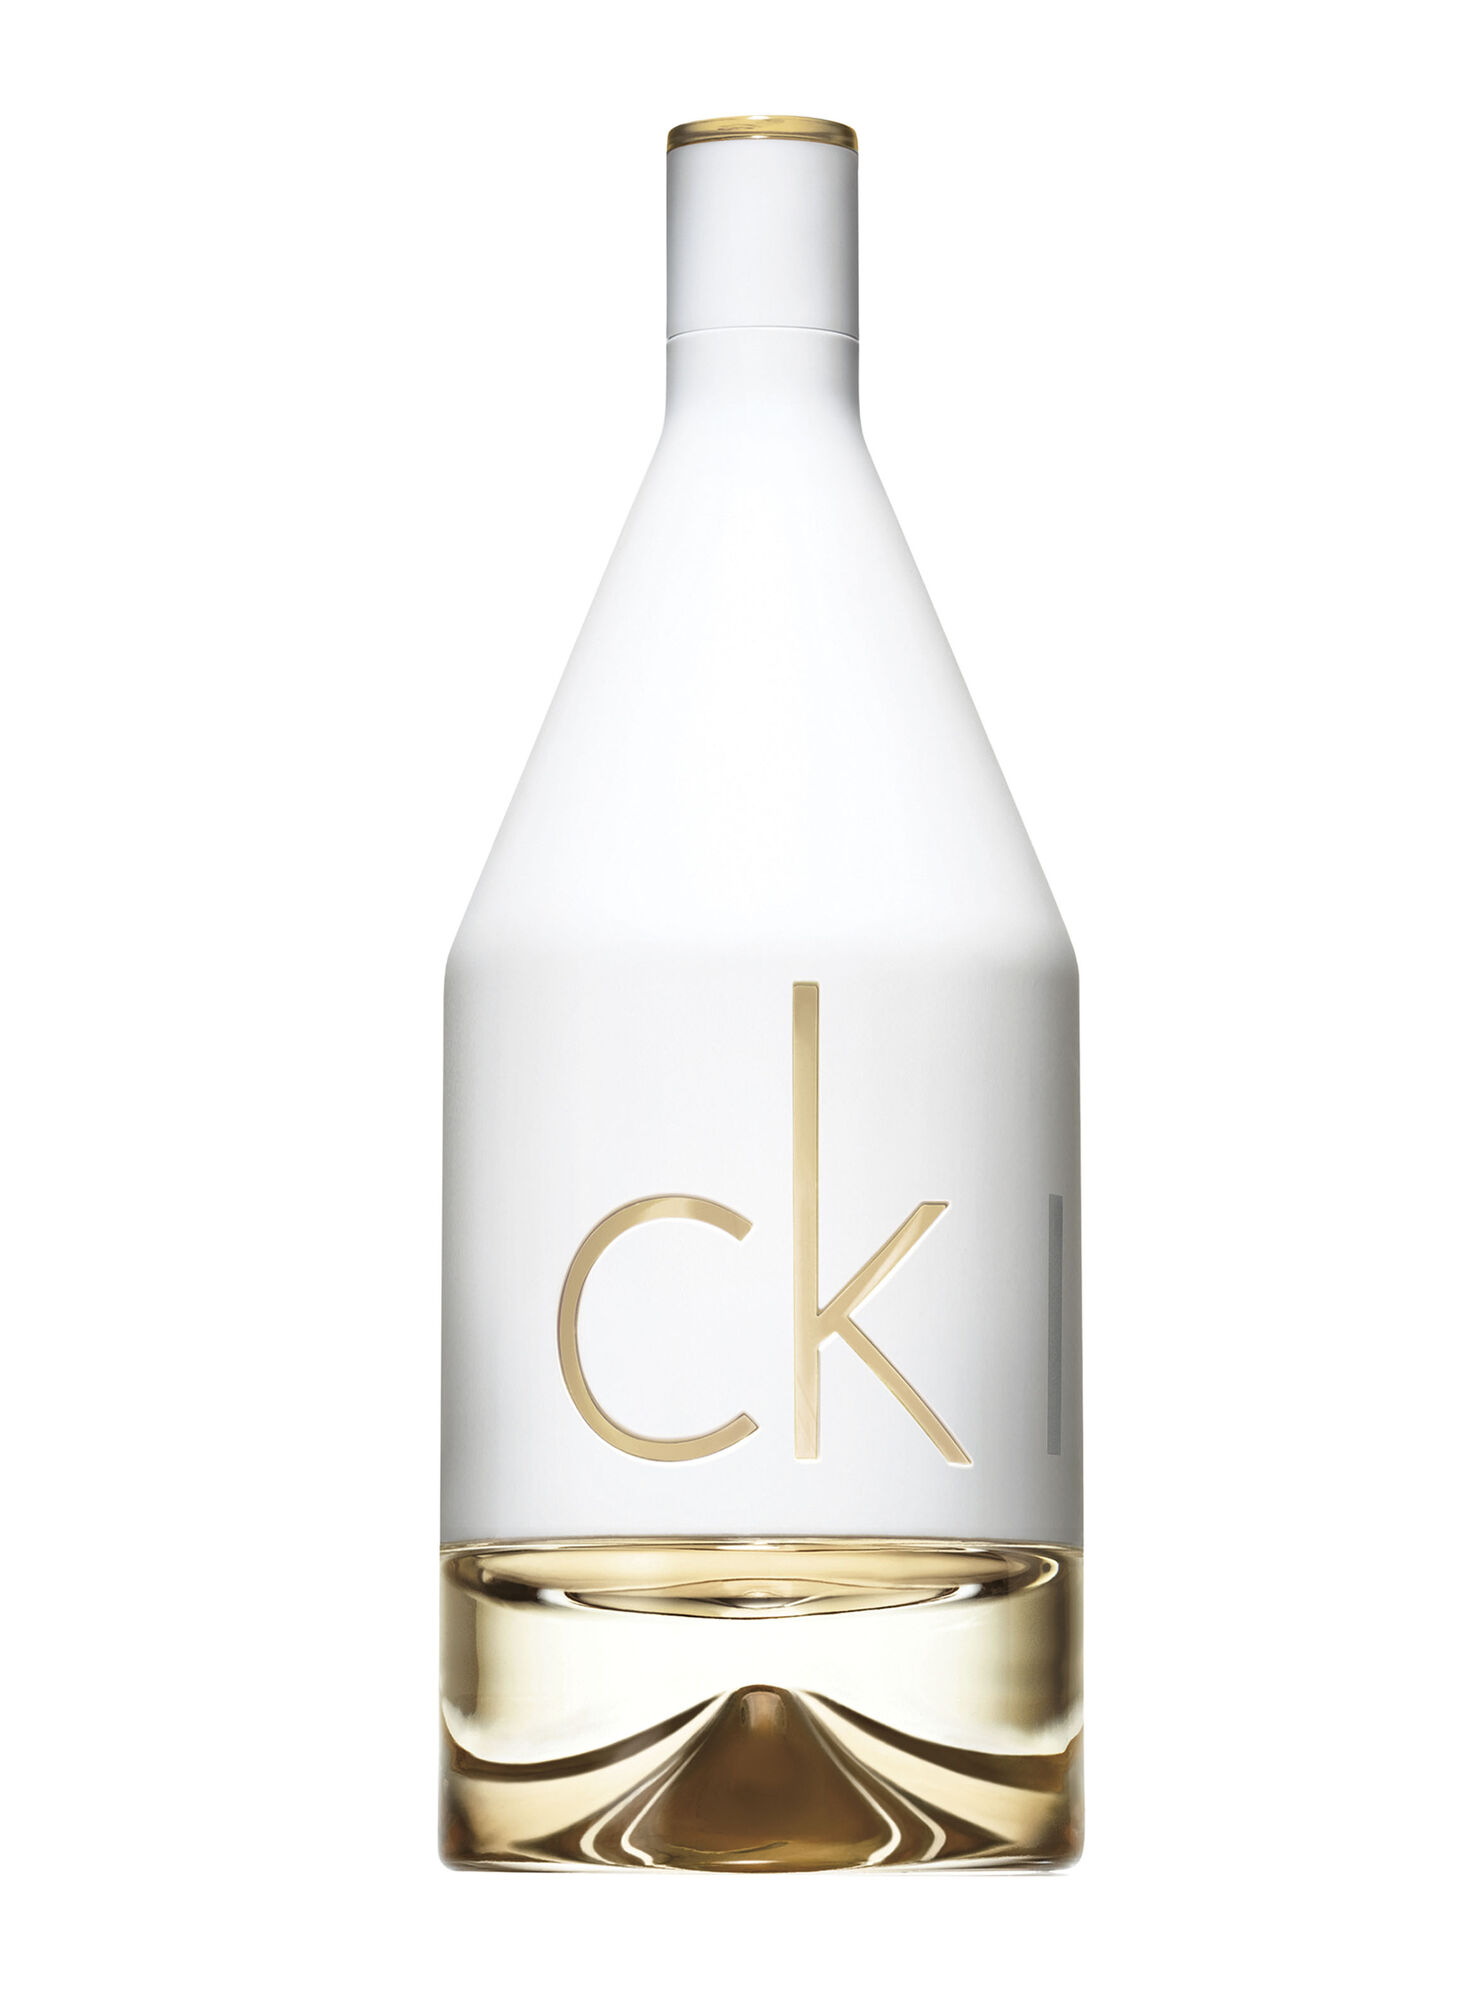 CALVIN KLEIN Ck in 2U EDT Mujer 150 ml - VyP Perfumería